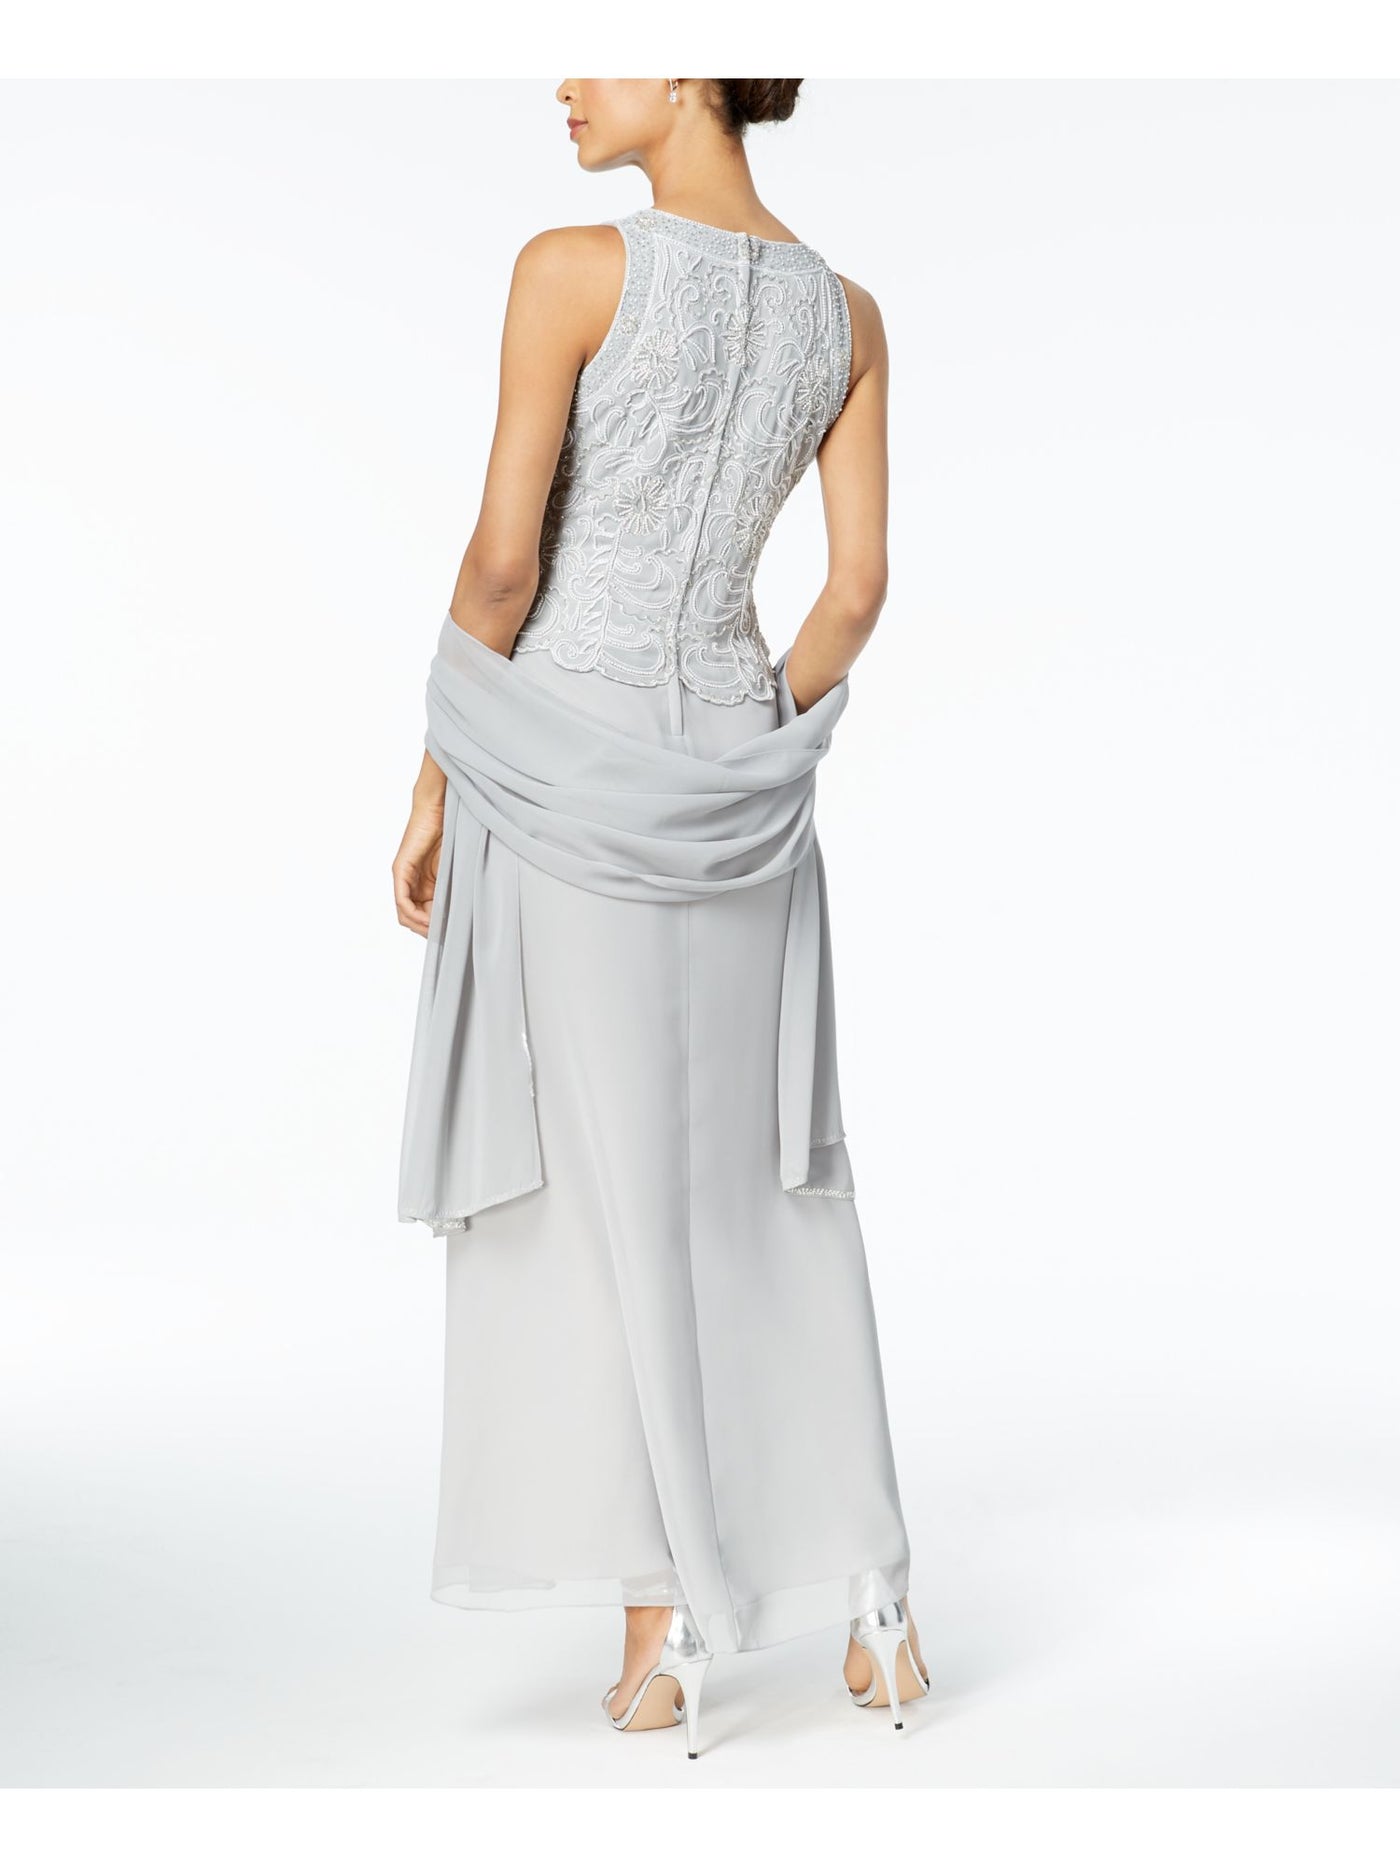 JKARA Womens Silver Beaded Gown Sleeveless Jewel Neck Maxi Evening Dress 6